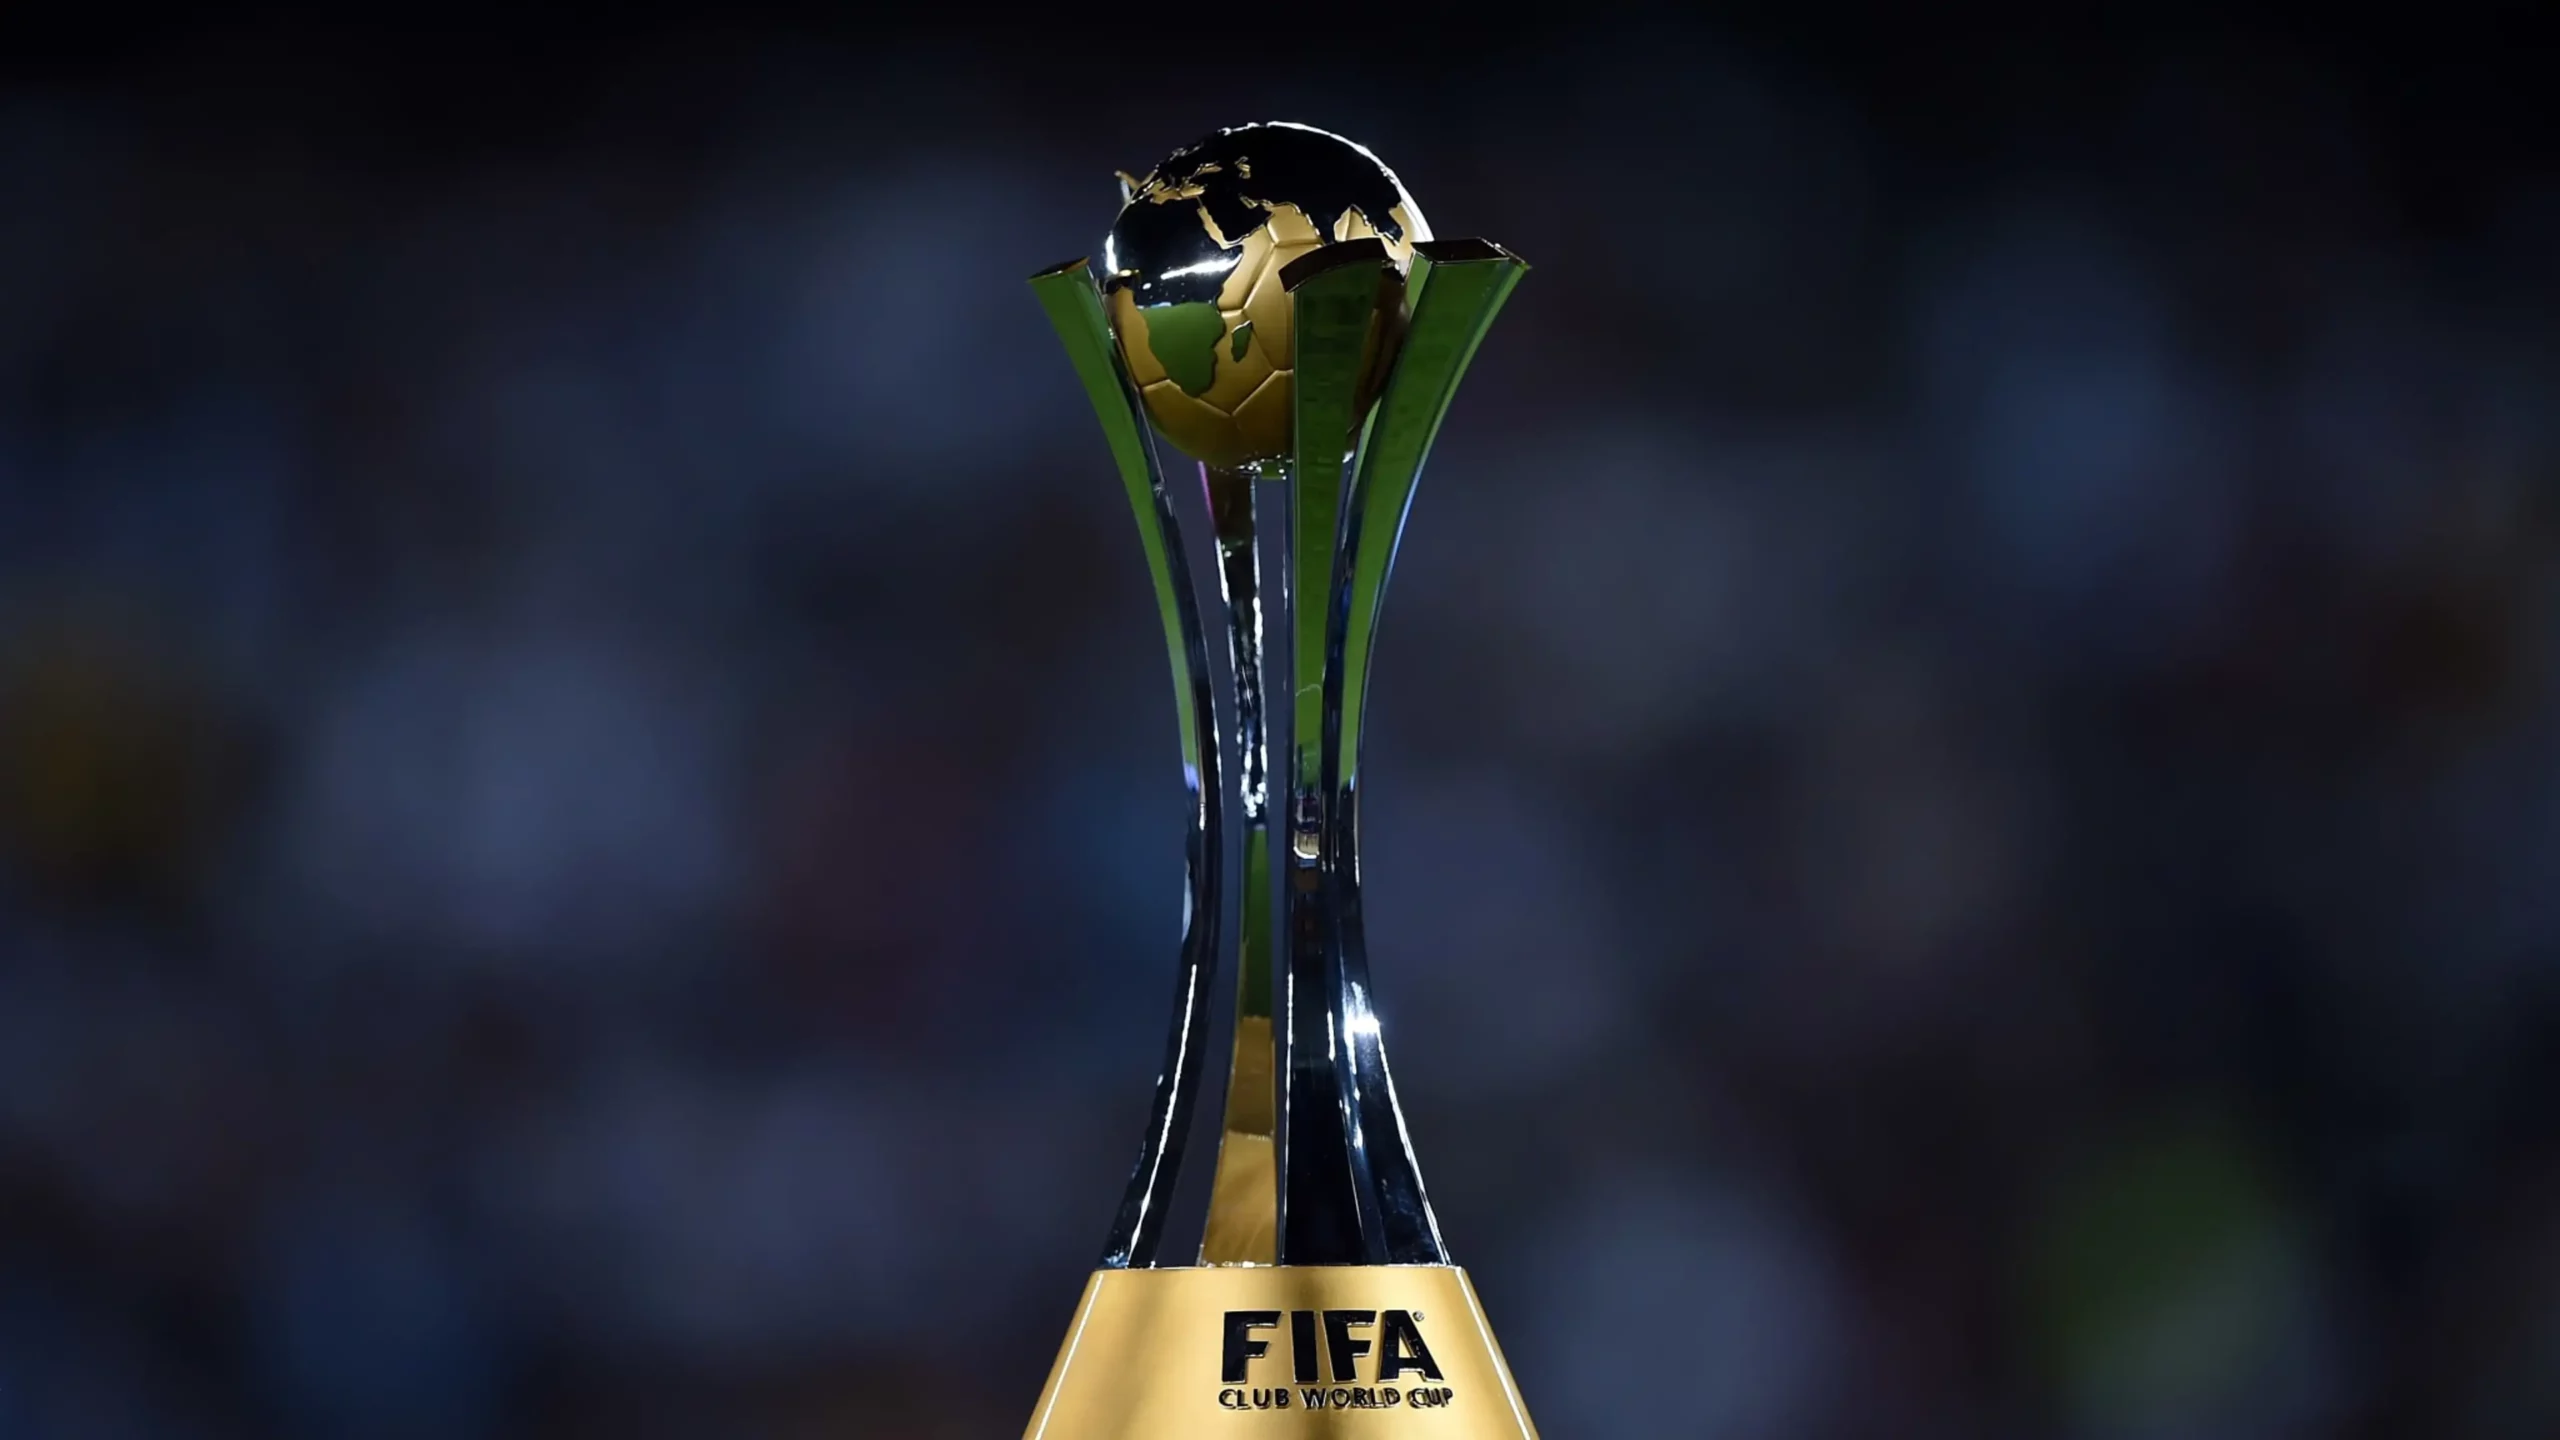 قائمة الفرق المشاركة في كأس العالم للأندية 2023 وموعد انطلاق البطوبة